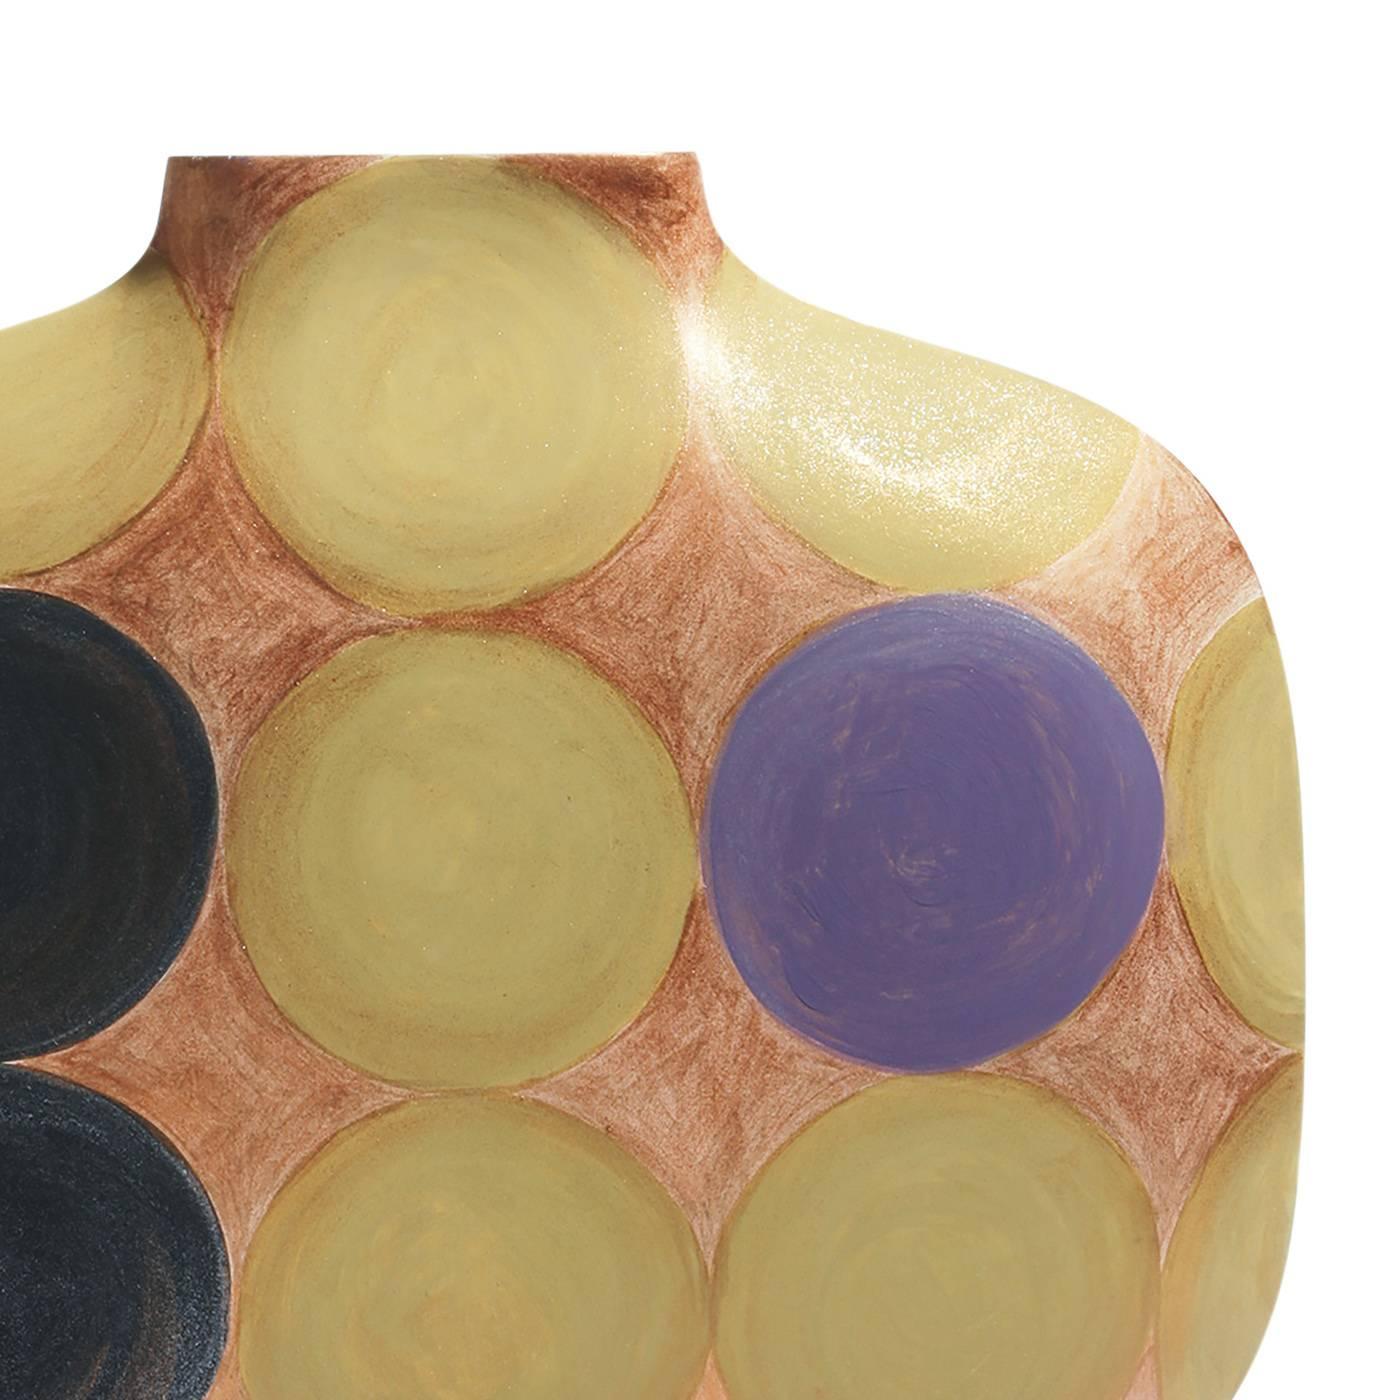 Bei dieser farbenfrohen Vase werden die einfachen Linien der Silhouette durch große bunte Punkte auf einem erdfarbenen Hintergrund aufgehellt. Die farbenfrohe Dekoration wird von Hand aufgetragen und macht jedes der 50 Exemplare dieser limitierten